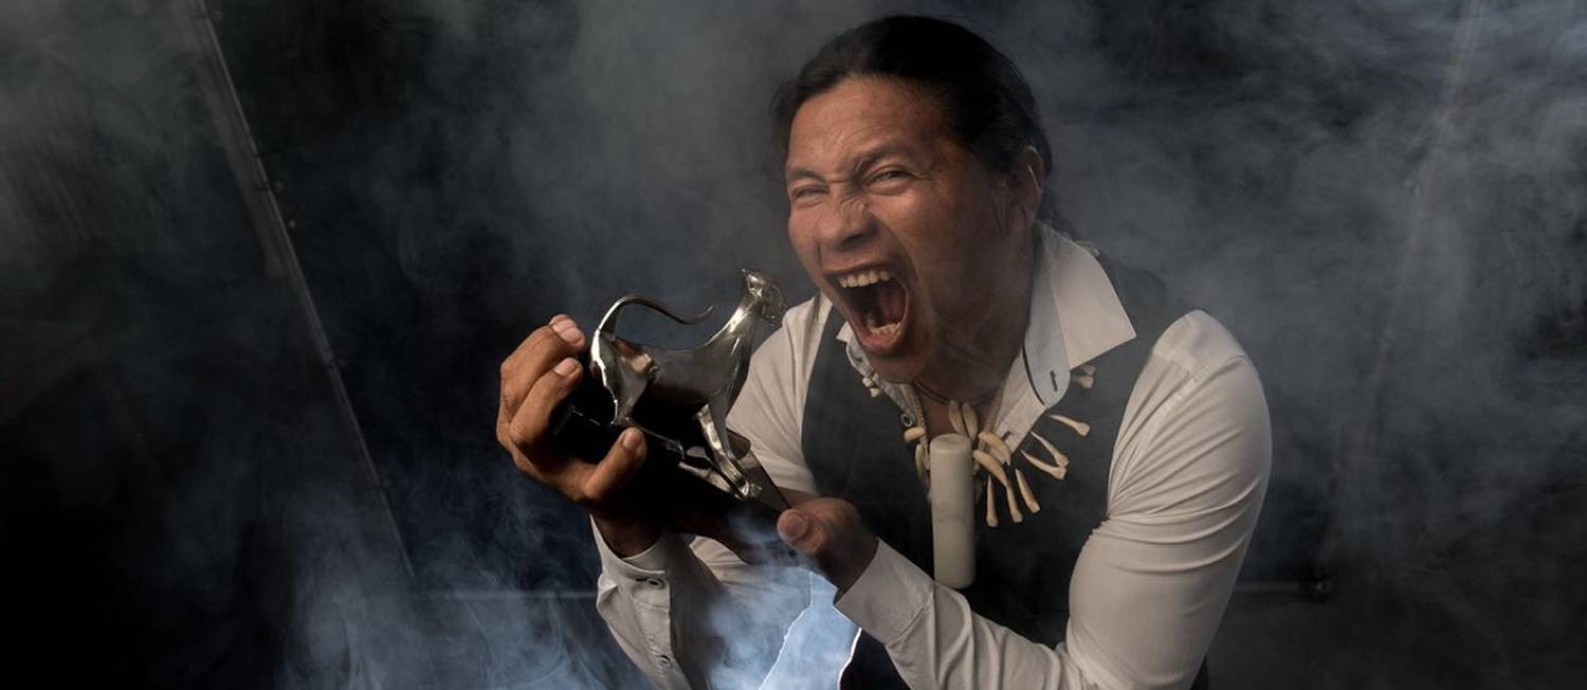 SC - Regis Wyrupu, ator indígena premiado no Festival de Locarno por papel no filme A Febre Foto: Divulgação/Festival de Locarno / Divulgação